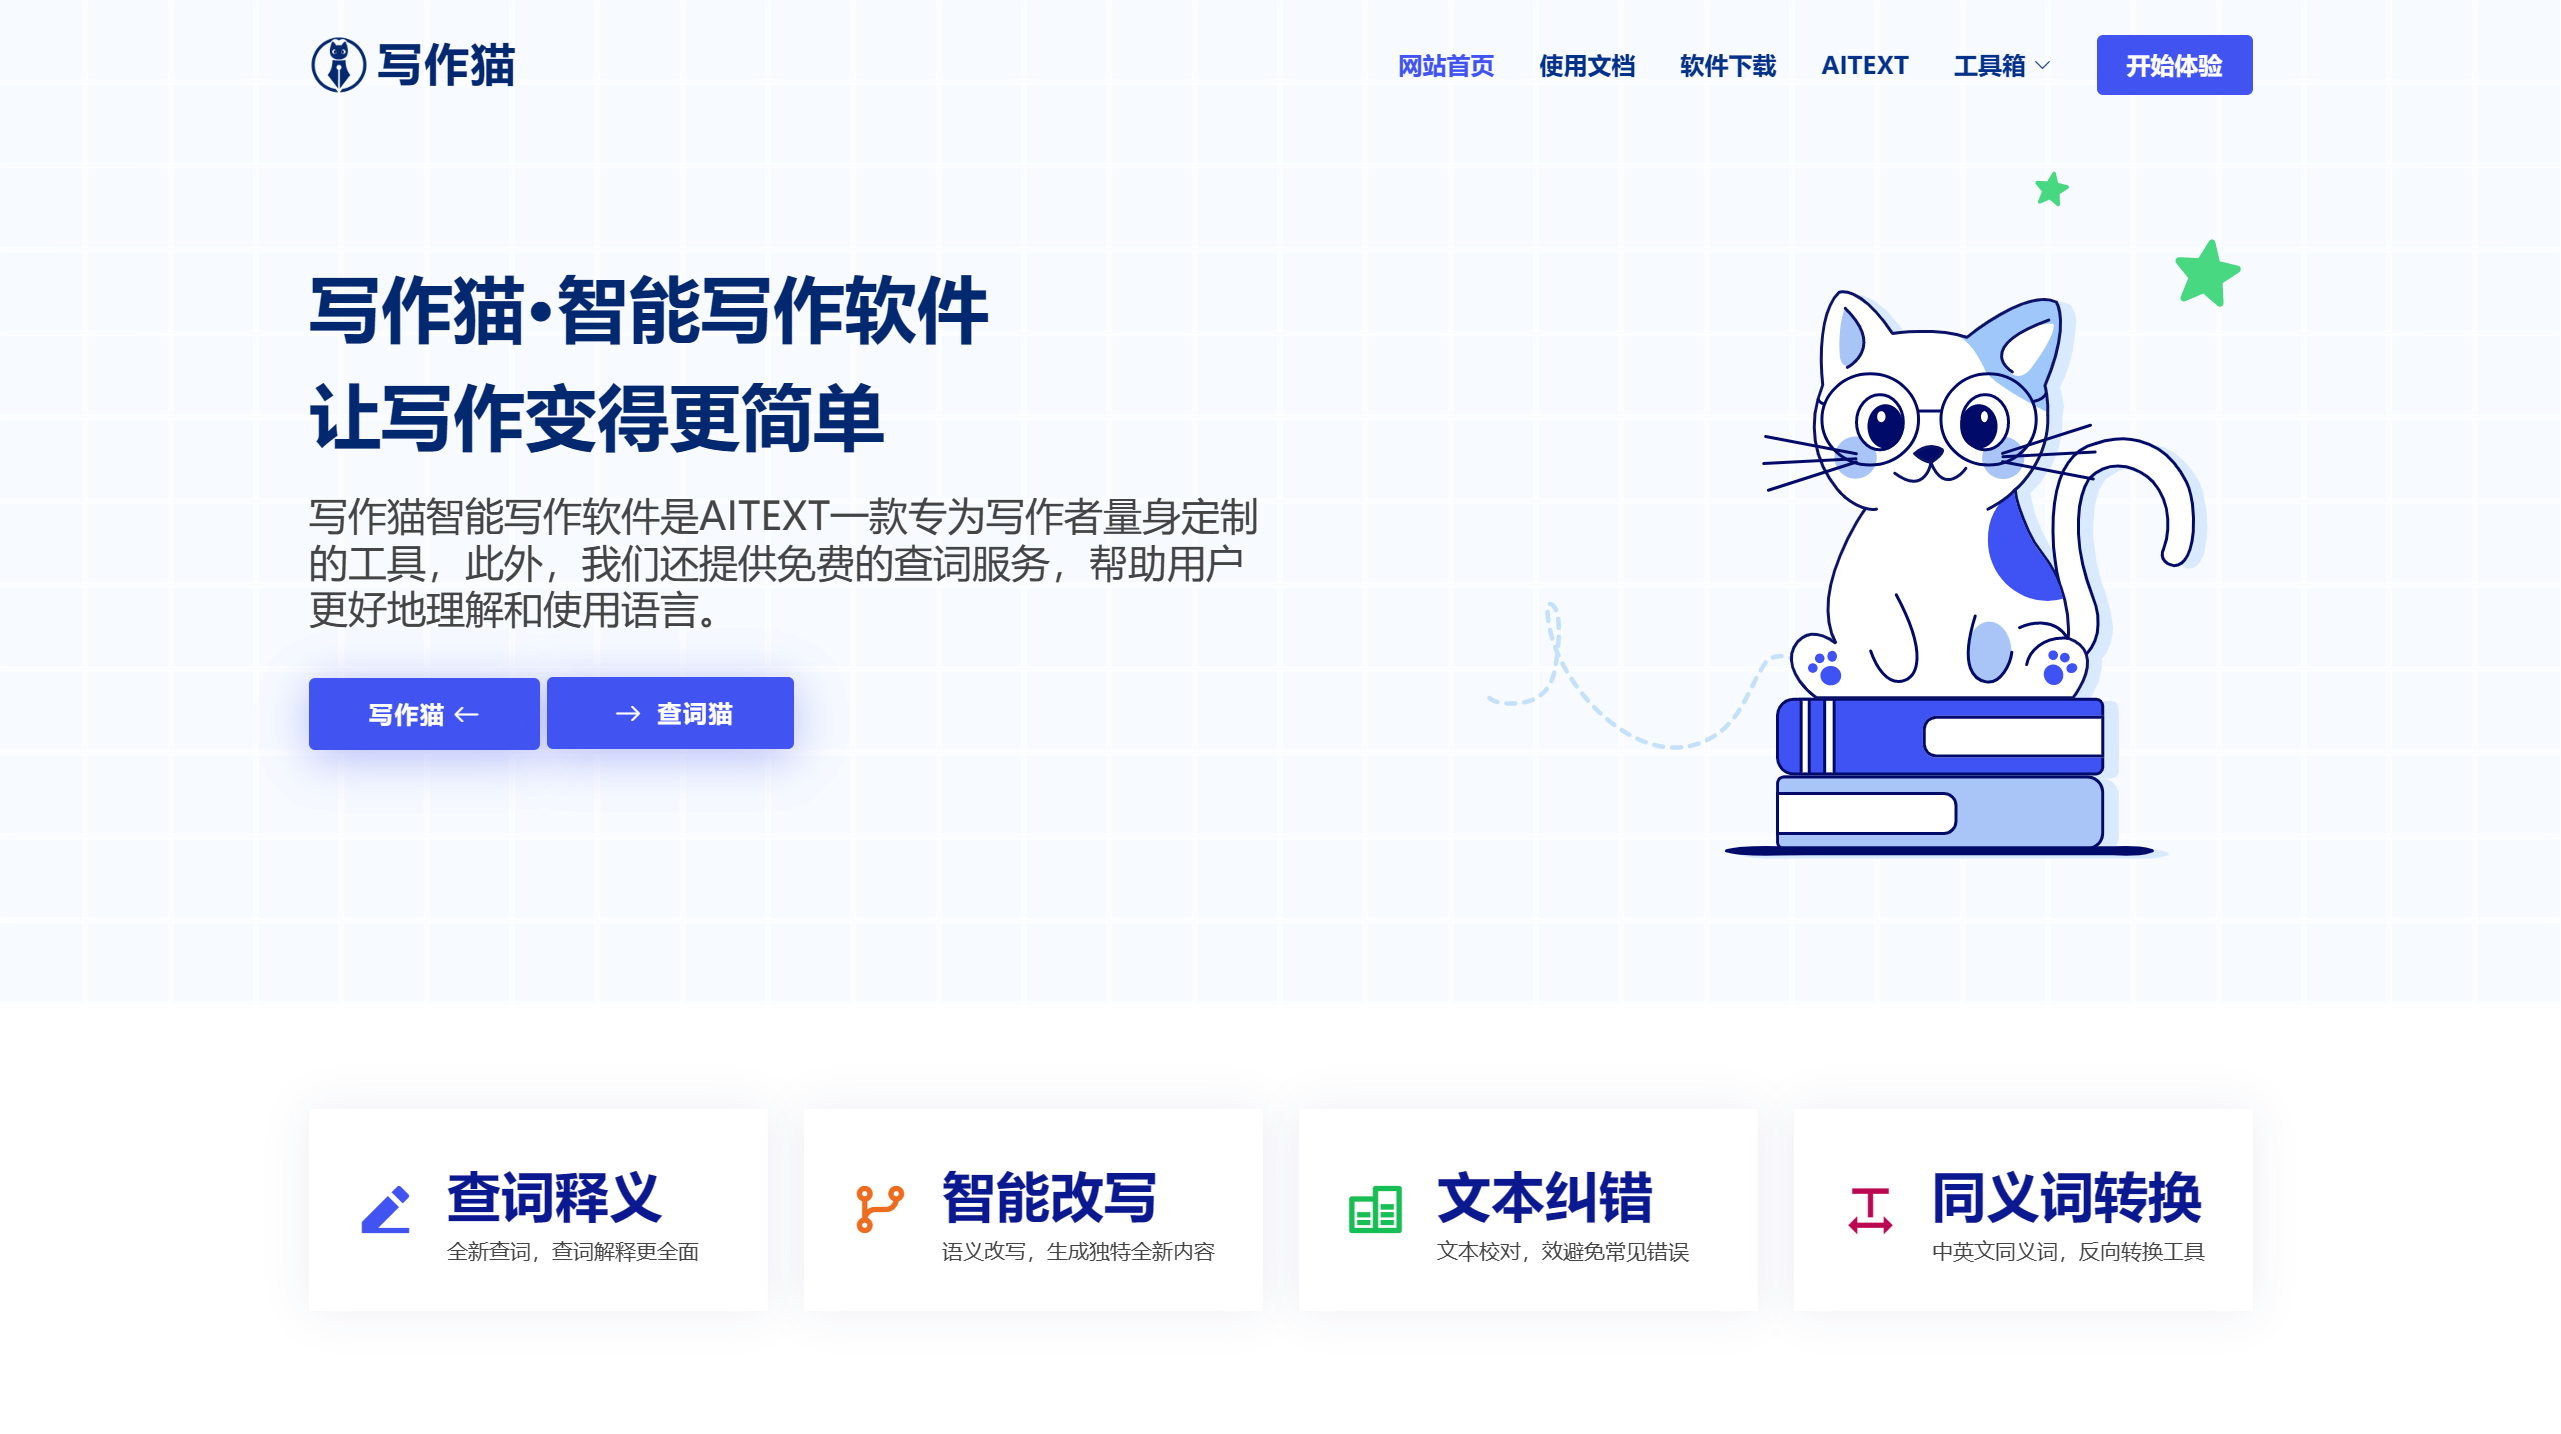 FireShot Capture 027 - AI智能写作,在线写作创作平台,AI写作更简单 - 写作猫® - www.xiezuomao.com.png